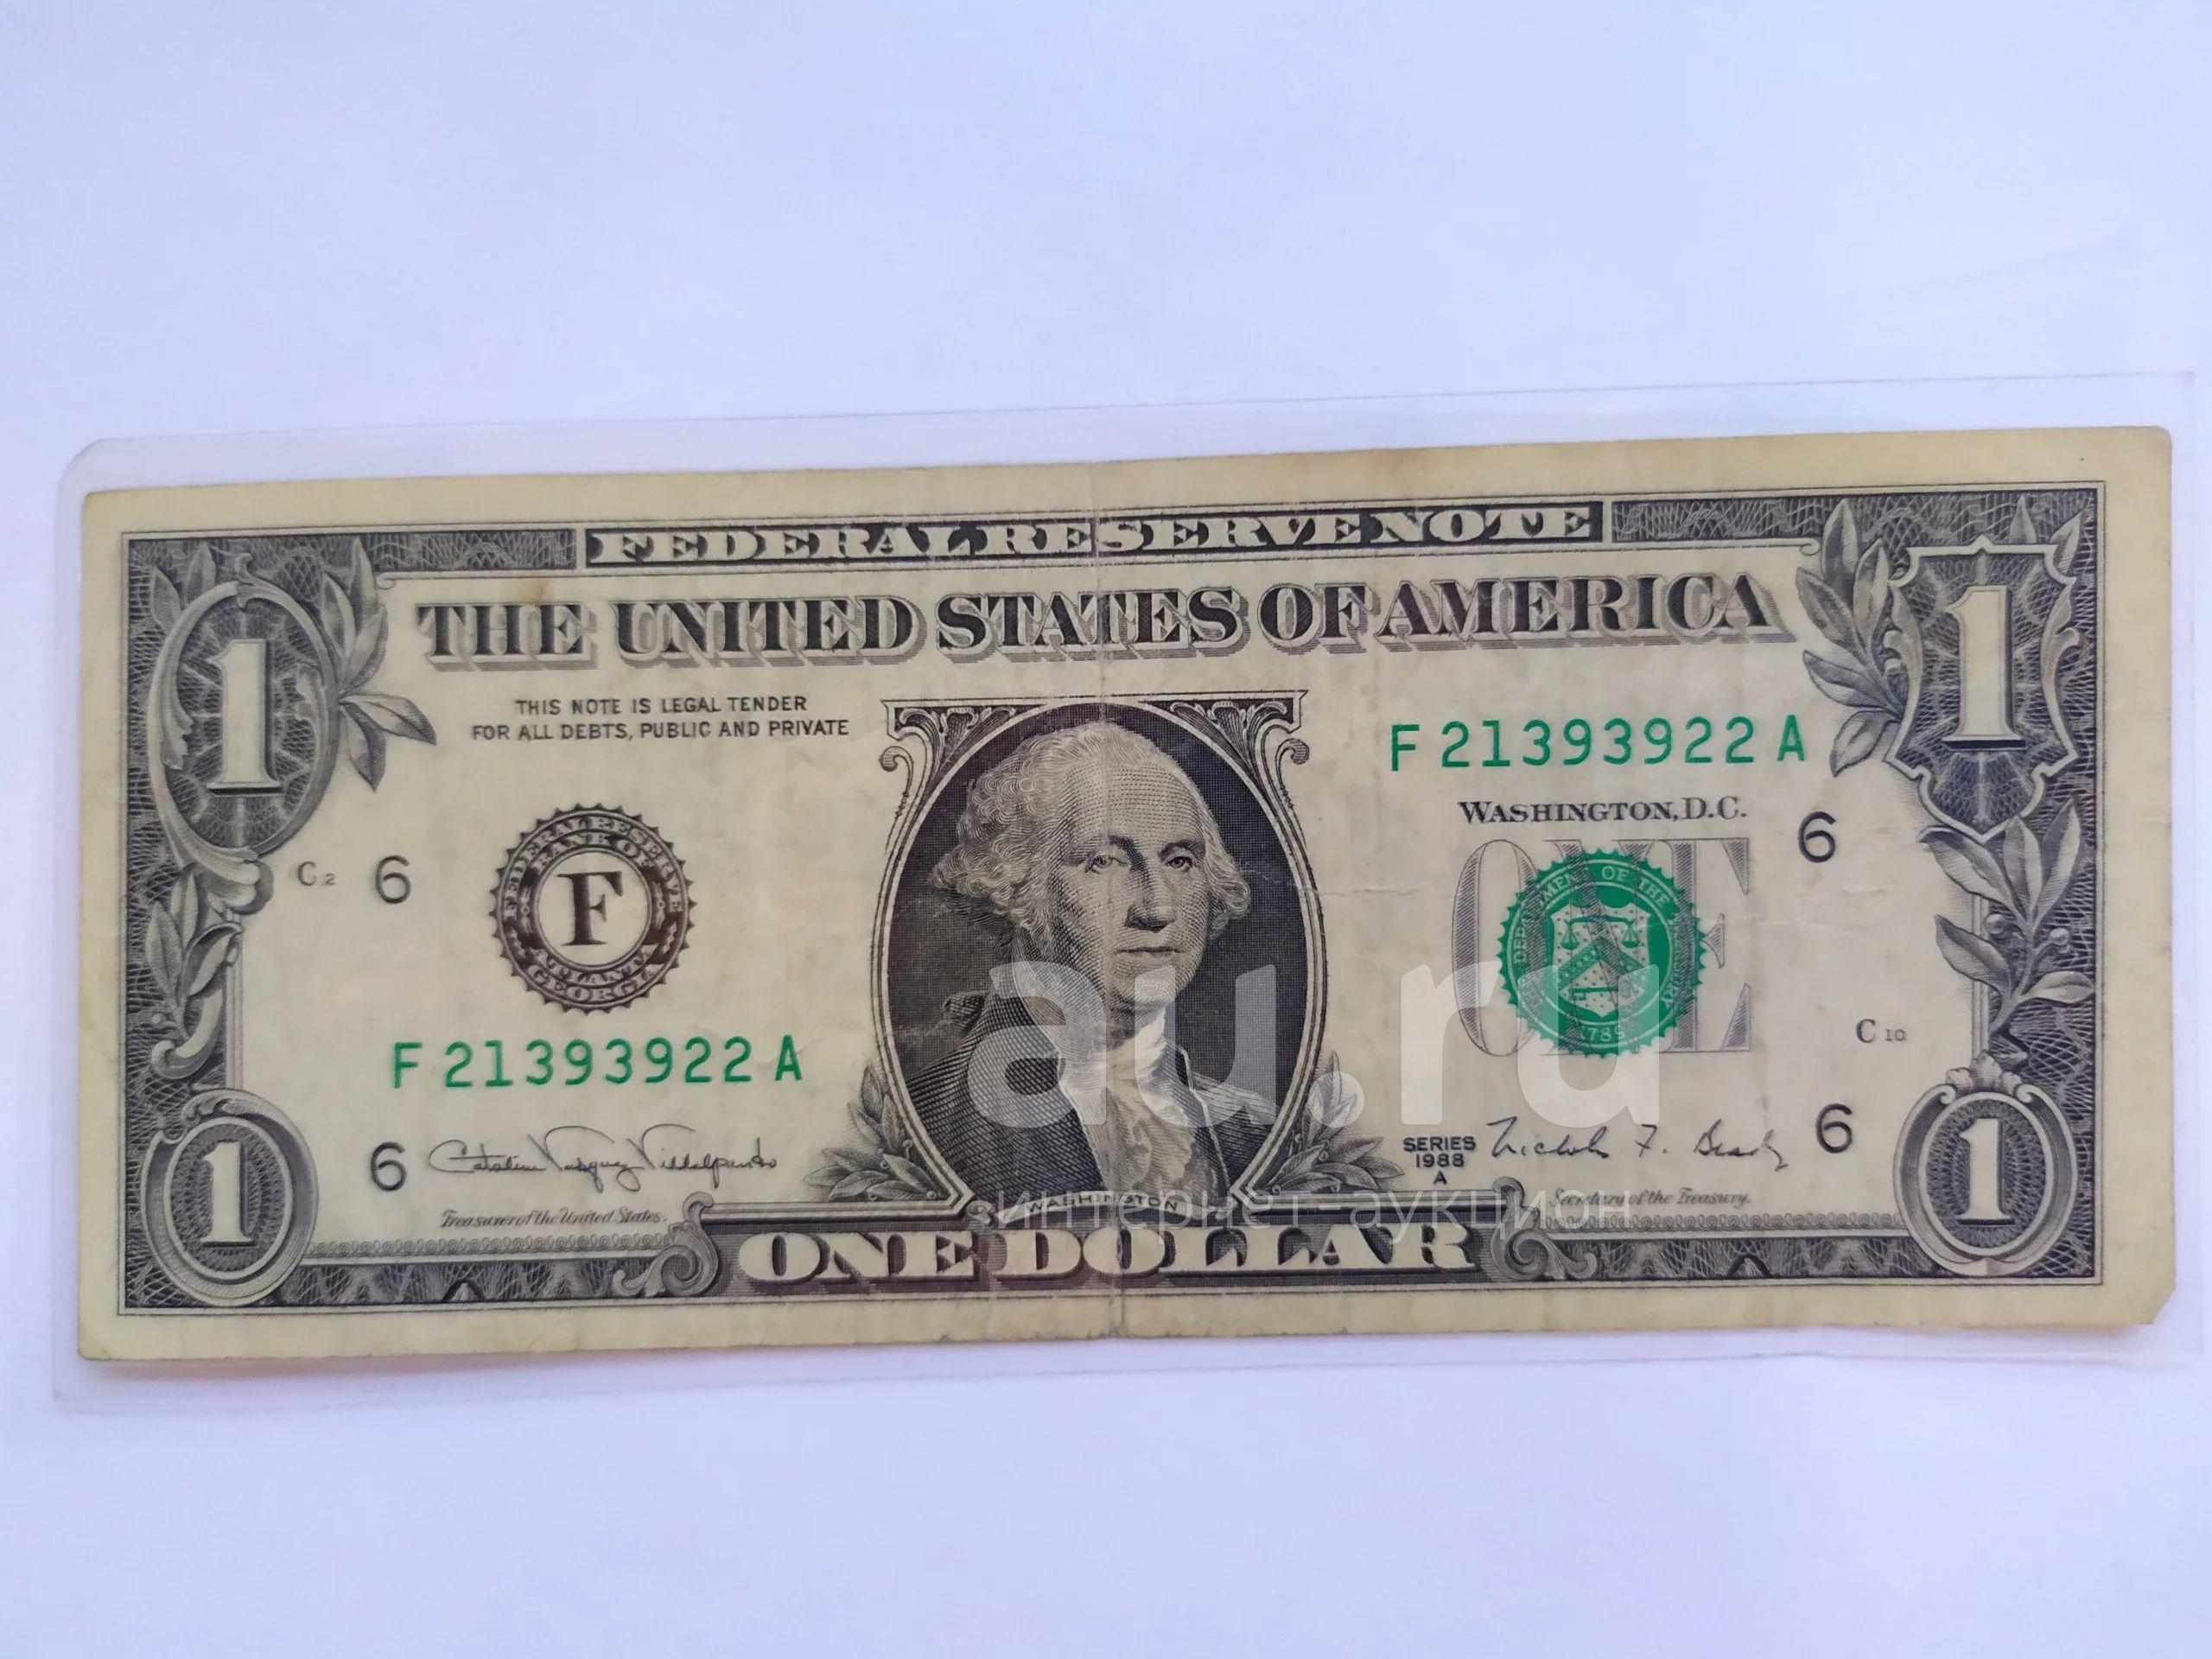 Том за 1 доллар. Доллар купюра. Купюра 1 доллар. 100 Долларов купюра. Американский доллар банкноты.